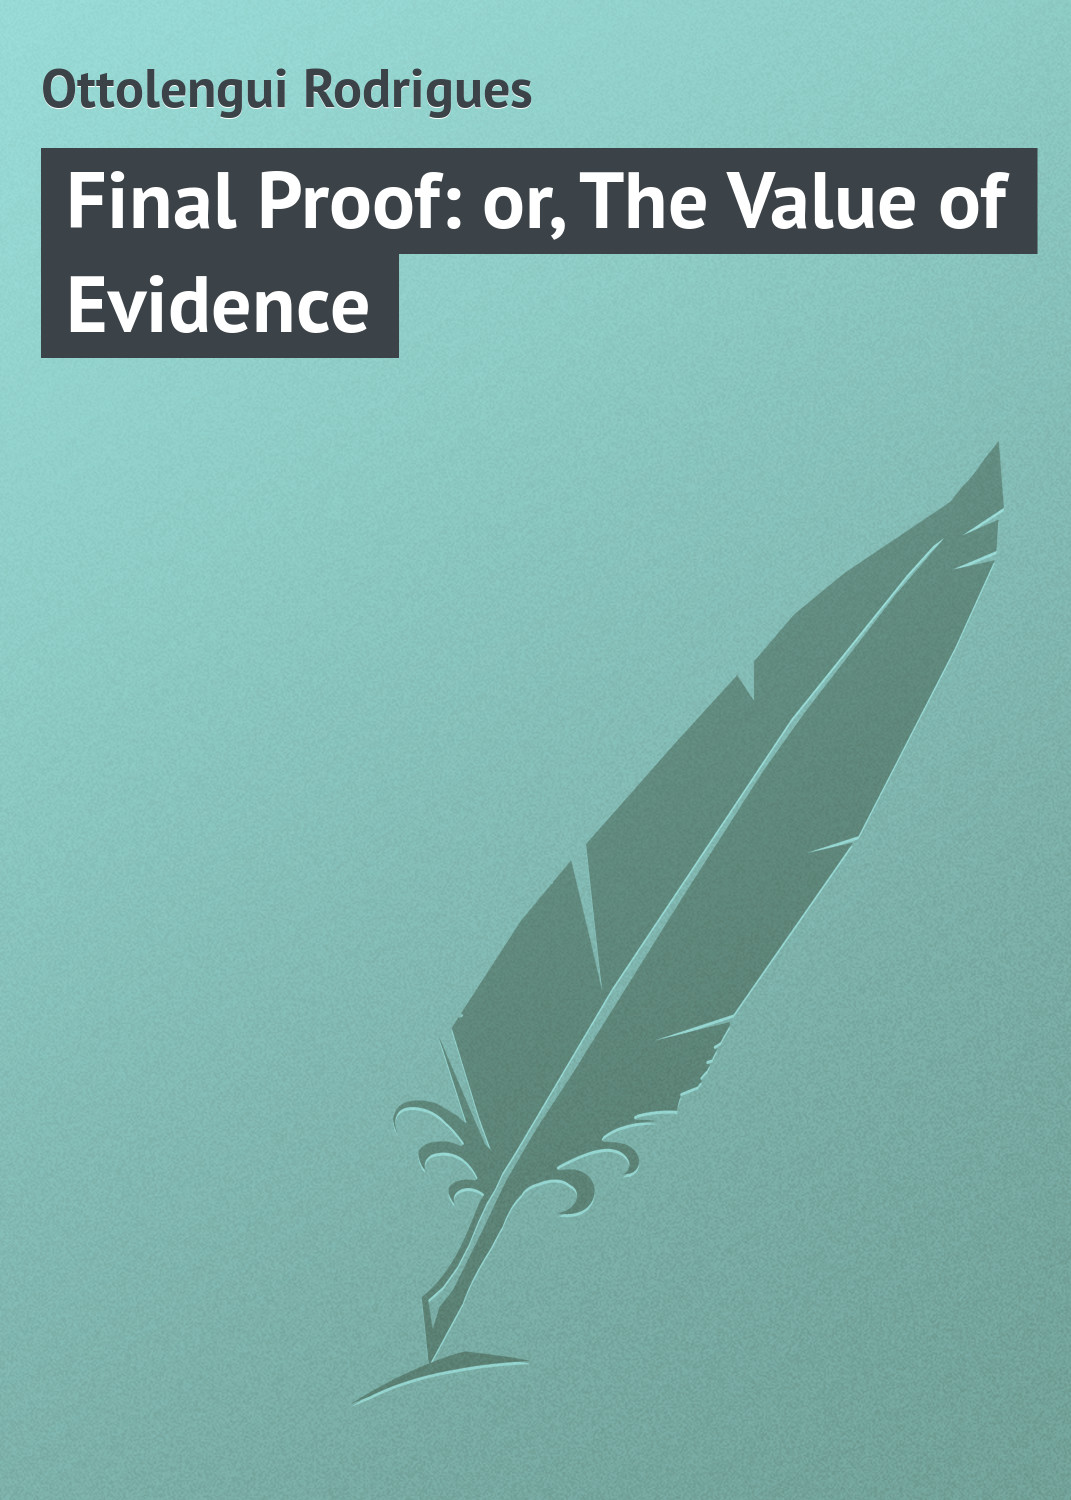 Книга Final Proof: or, The Value of Evidence из серии , созданная Rodrigues Ottolengui, может относится к жанру Зарубежная классика. Стоимость электронной книги Final Proof: or, The Value of Evidence с идентификатором 23165803 составляет 5.99 руб.